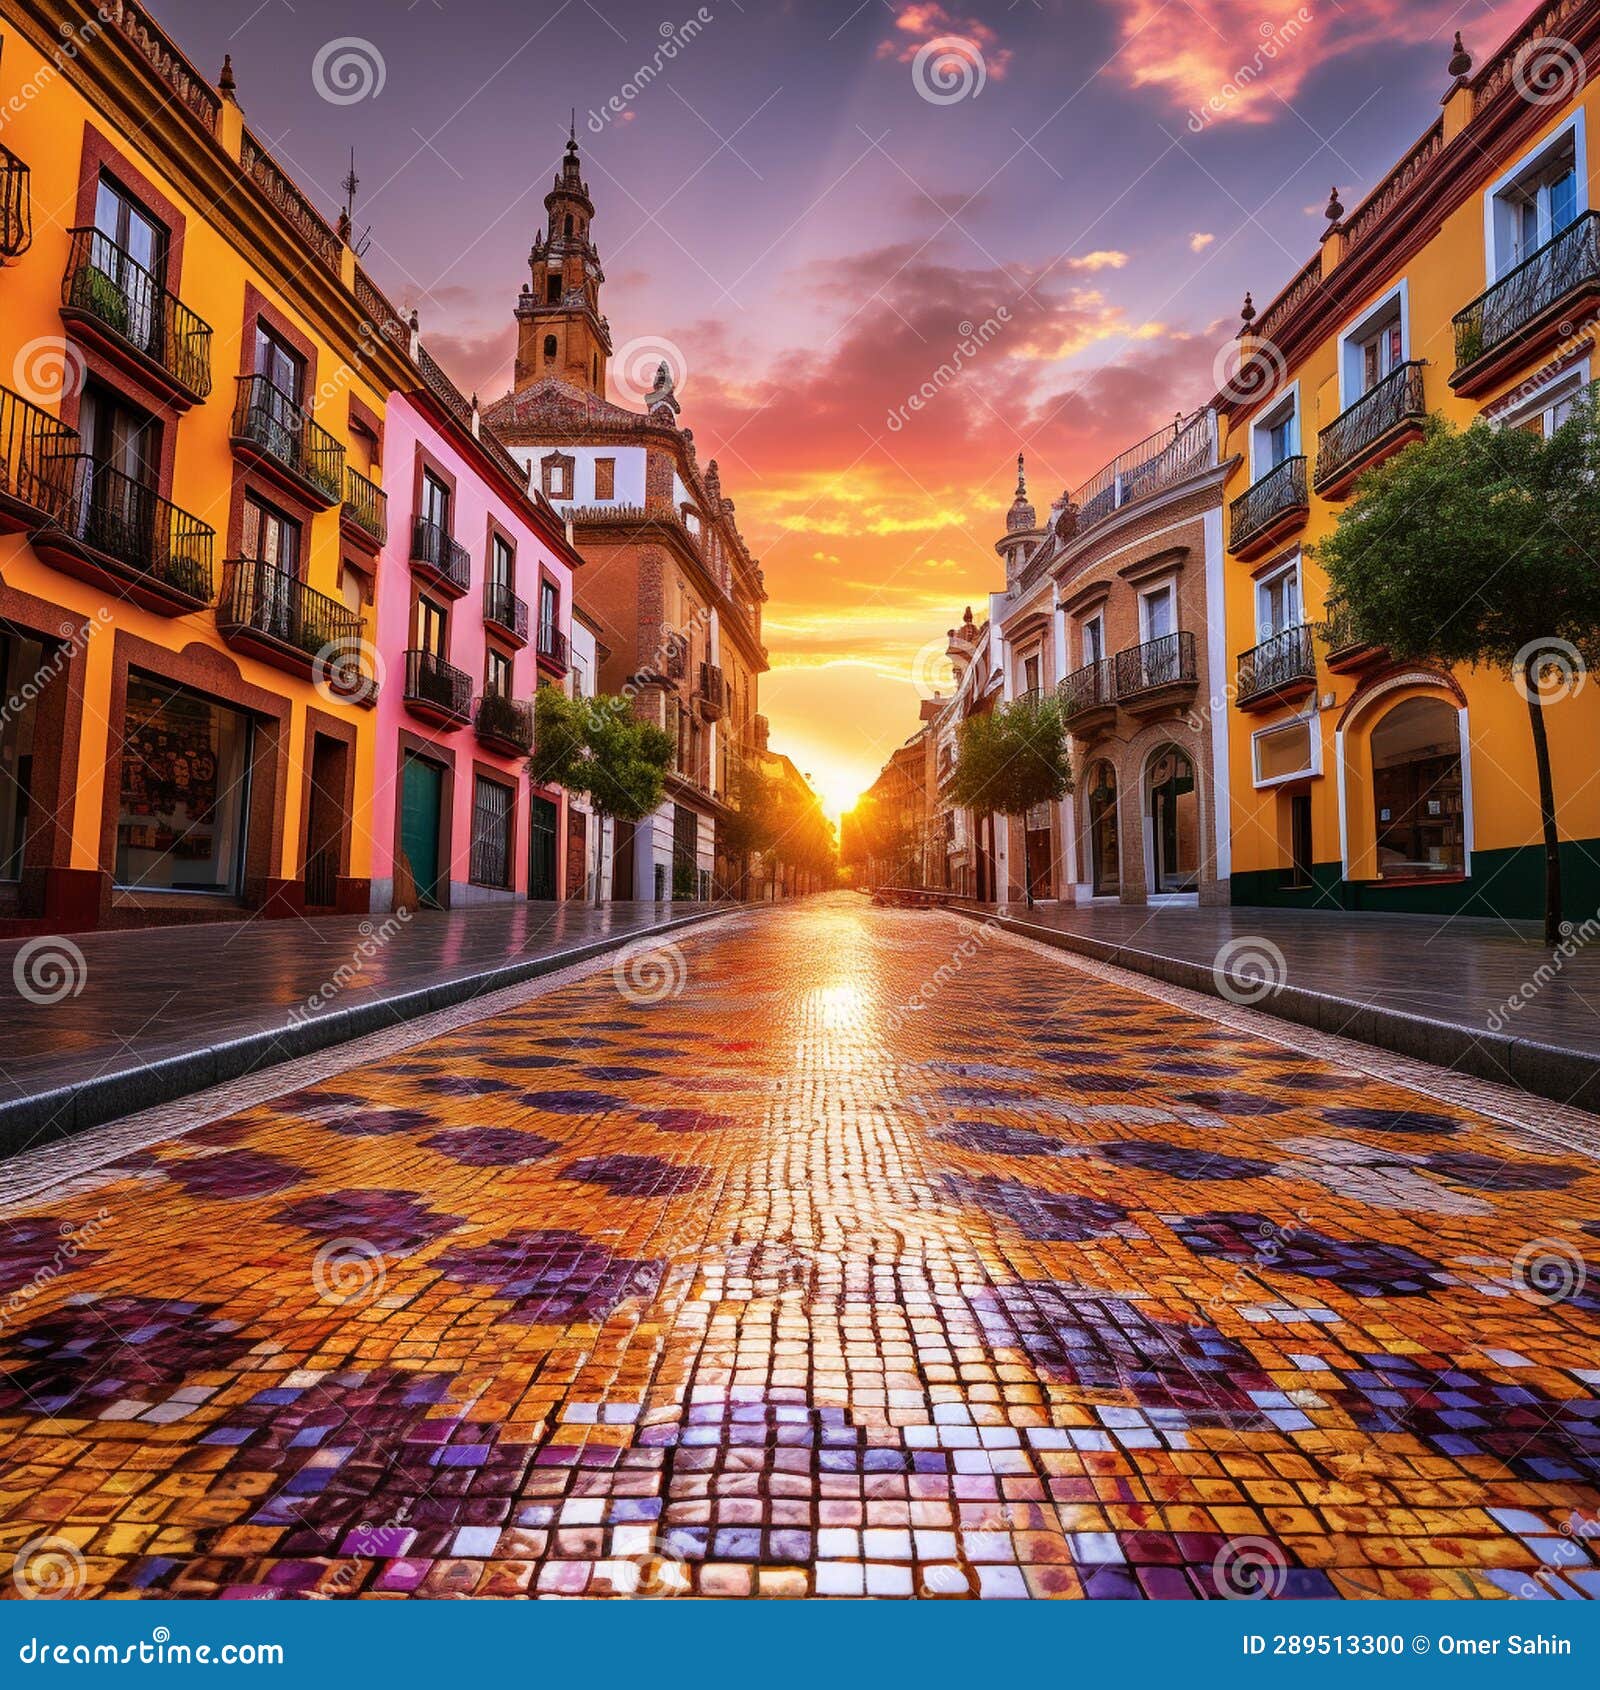 vibrant cityscape of seville, spain